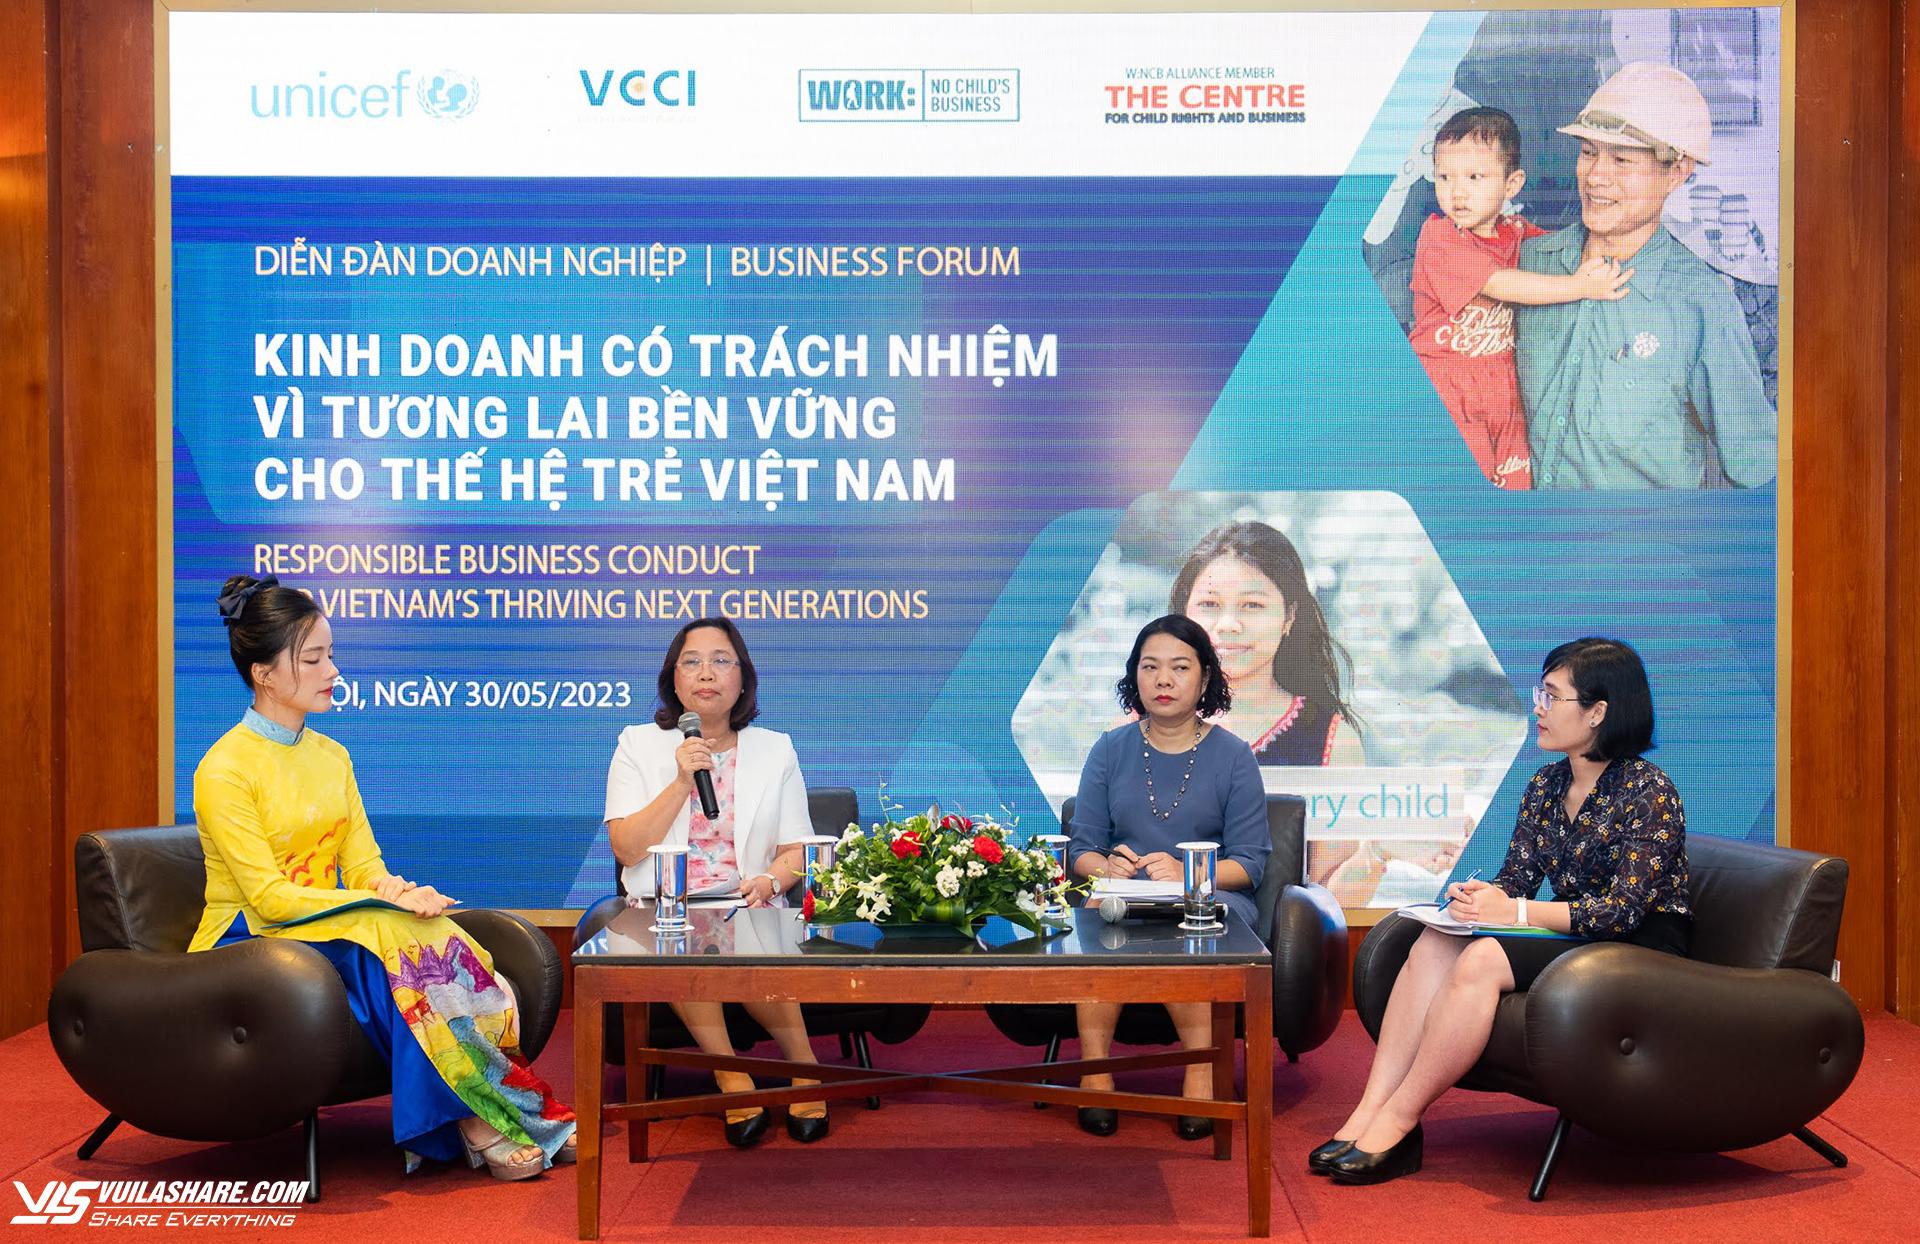 Diễn đàn Doanh nghiệp do VCCI phối hợp với UNICEF tổ chức với chủ đề Kinh doanh có trách nhiệm, gắn với quyền trẻ em, nhận được nhiều sự quan tâm của cộng đồng doanh nghiệp. Nguồn ảnh: VCCI